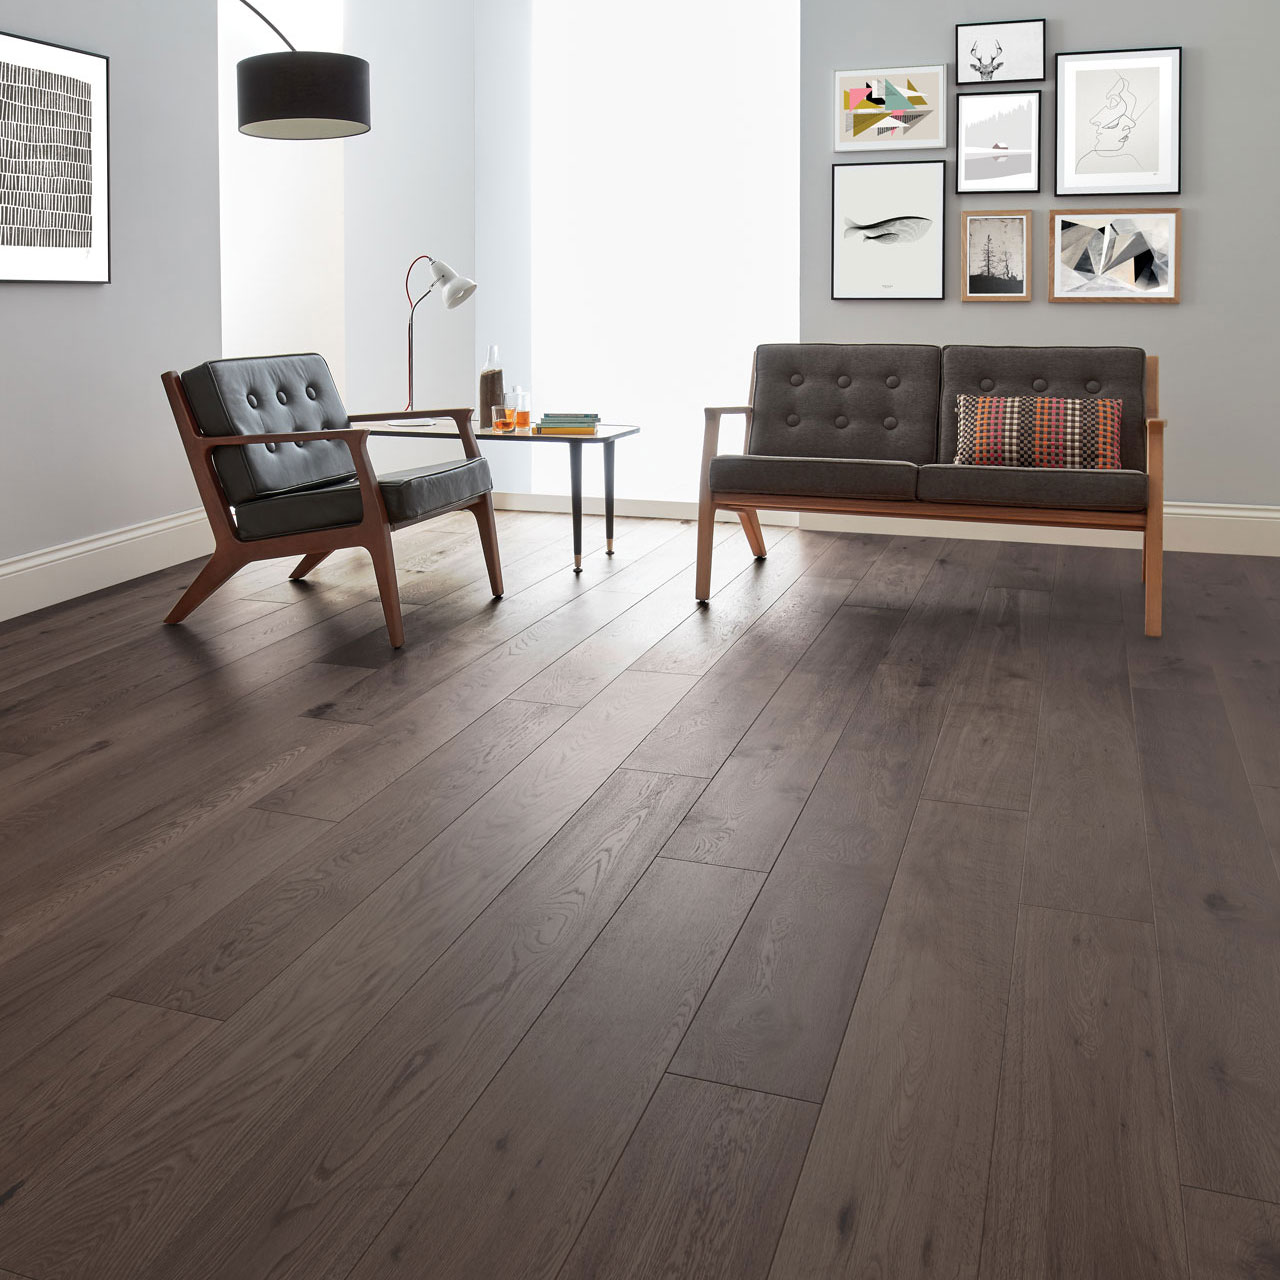 Dark Wood Floors Style Tips, Furniture And Hardwood Floors